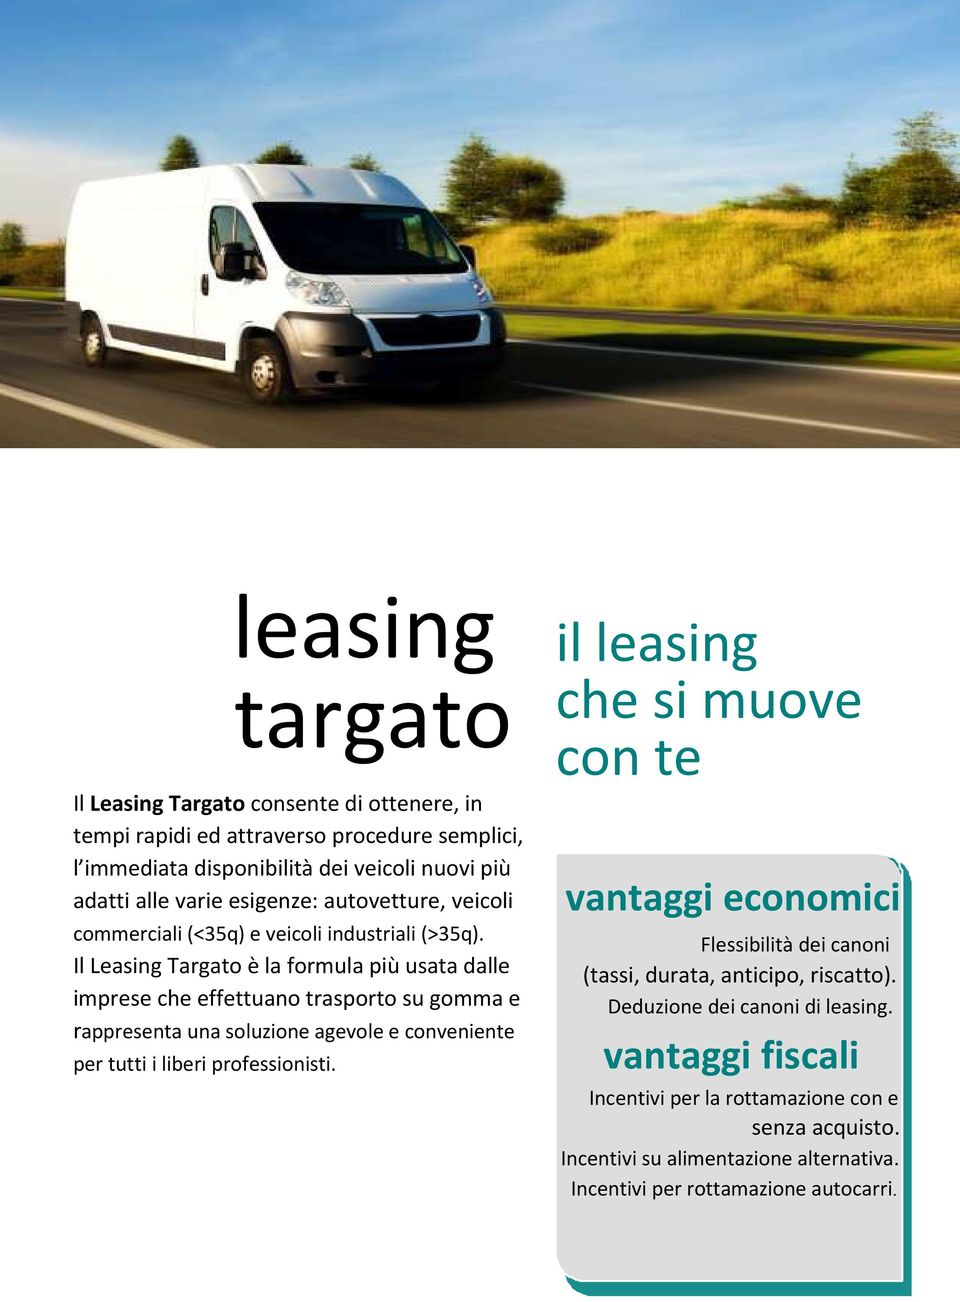 Il Leasing Targato è la formula più usata dalle imprese che effettuano trasporto su gomma e rappresenta una soluzione agevole e conveniente per tutti i liberi